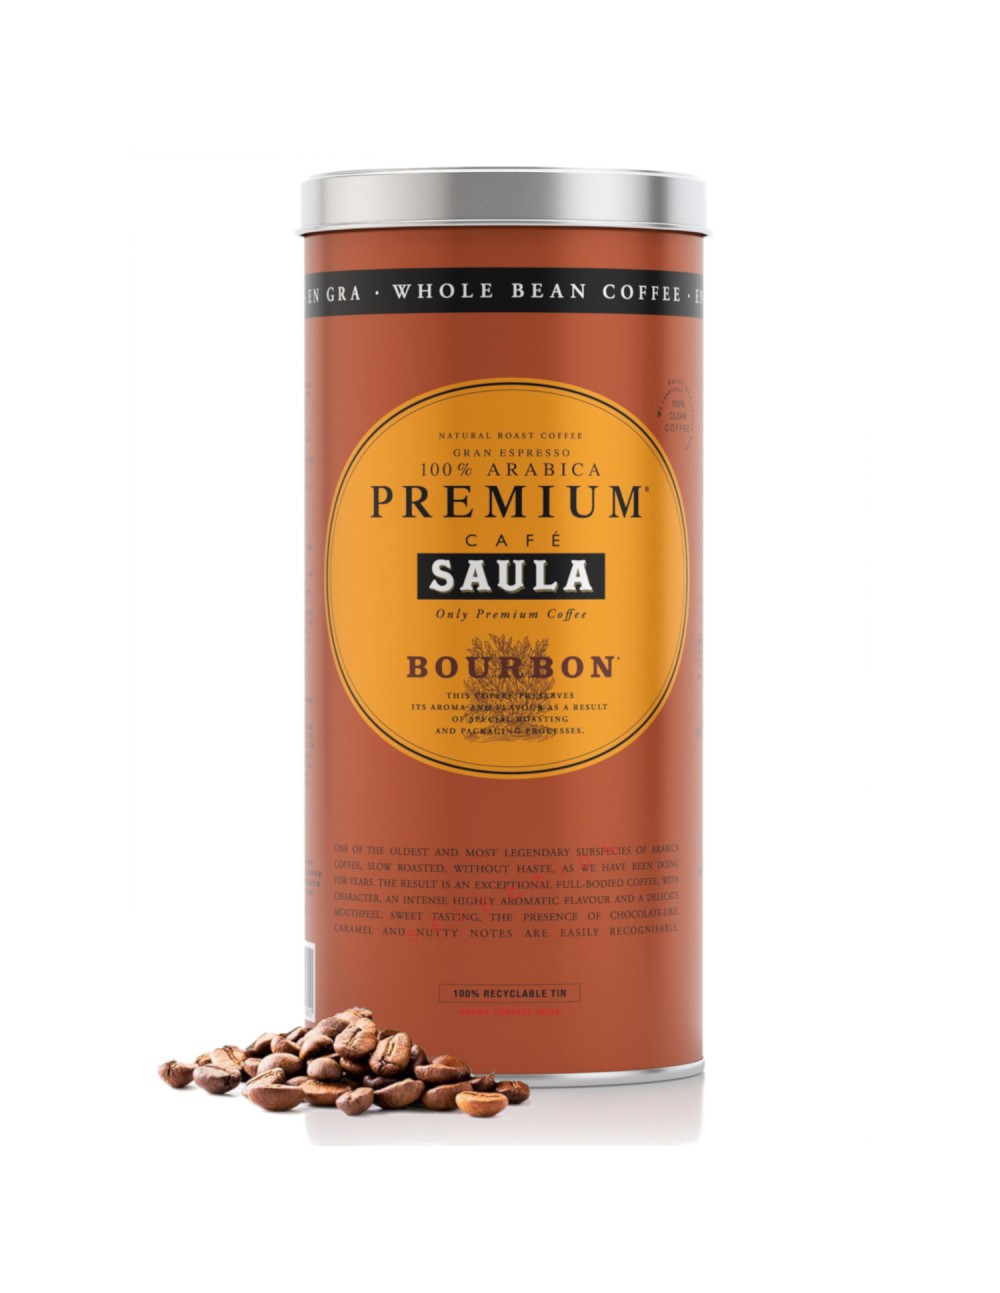 Café Gran Espresso Premium Ecológico Blend Grano Cafés Saula - 500g